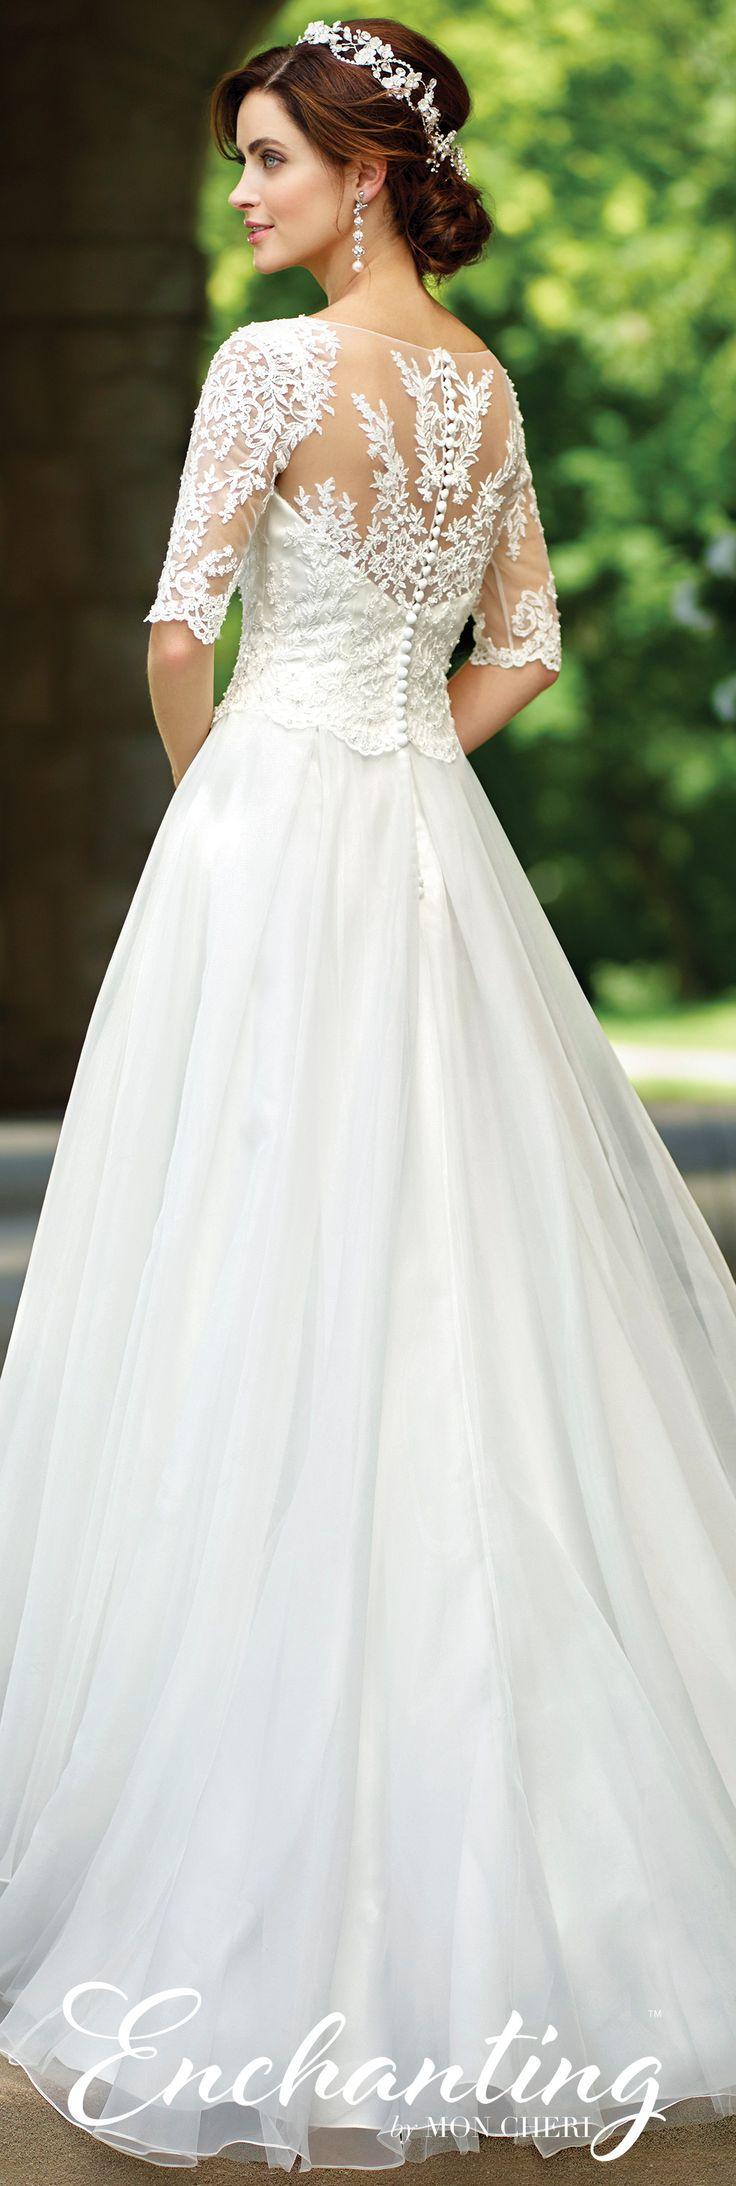 Wedding - Organza A-Line Wedding Dress- 117177- Enchanting By Mon Cheri